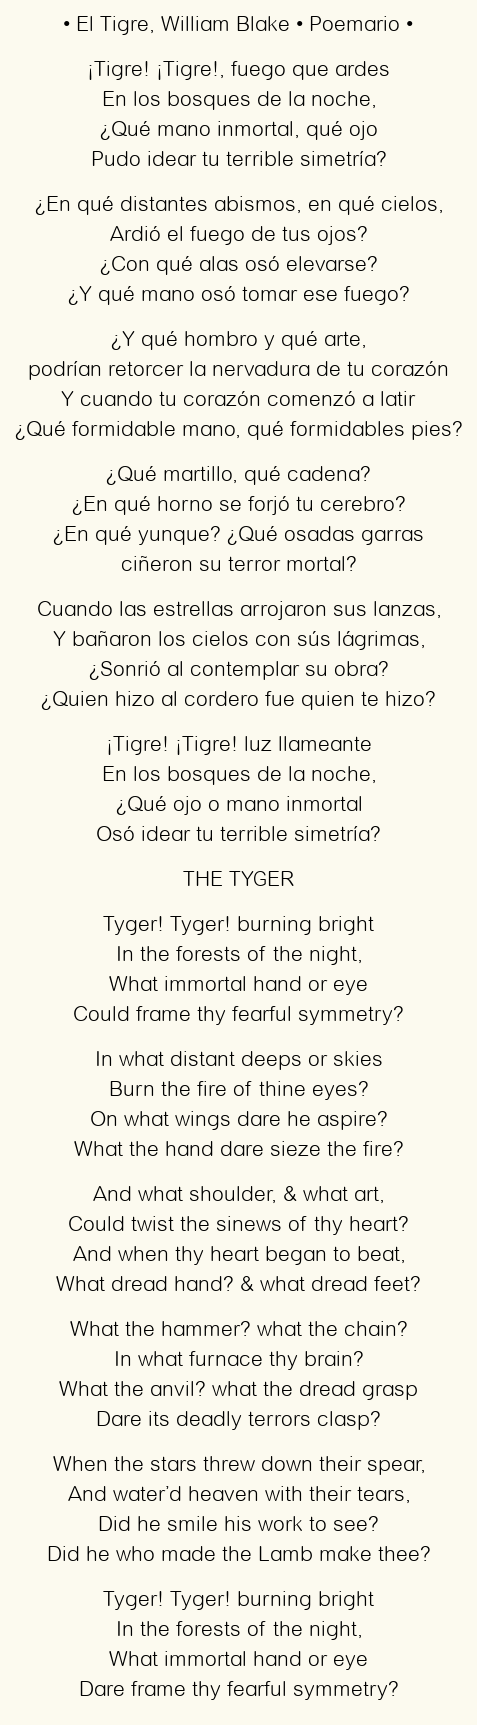 Imagen con el poema El Tigre, por William Blake